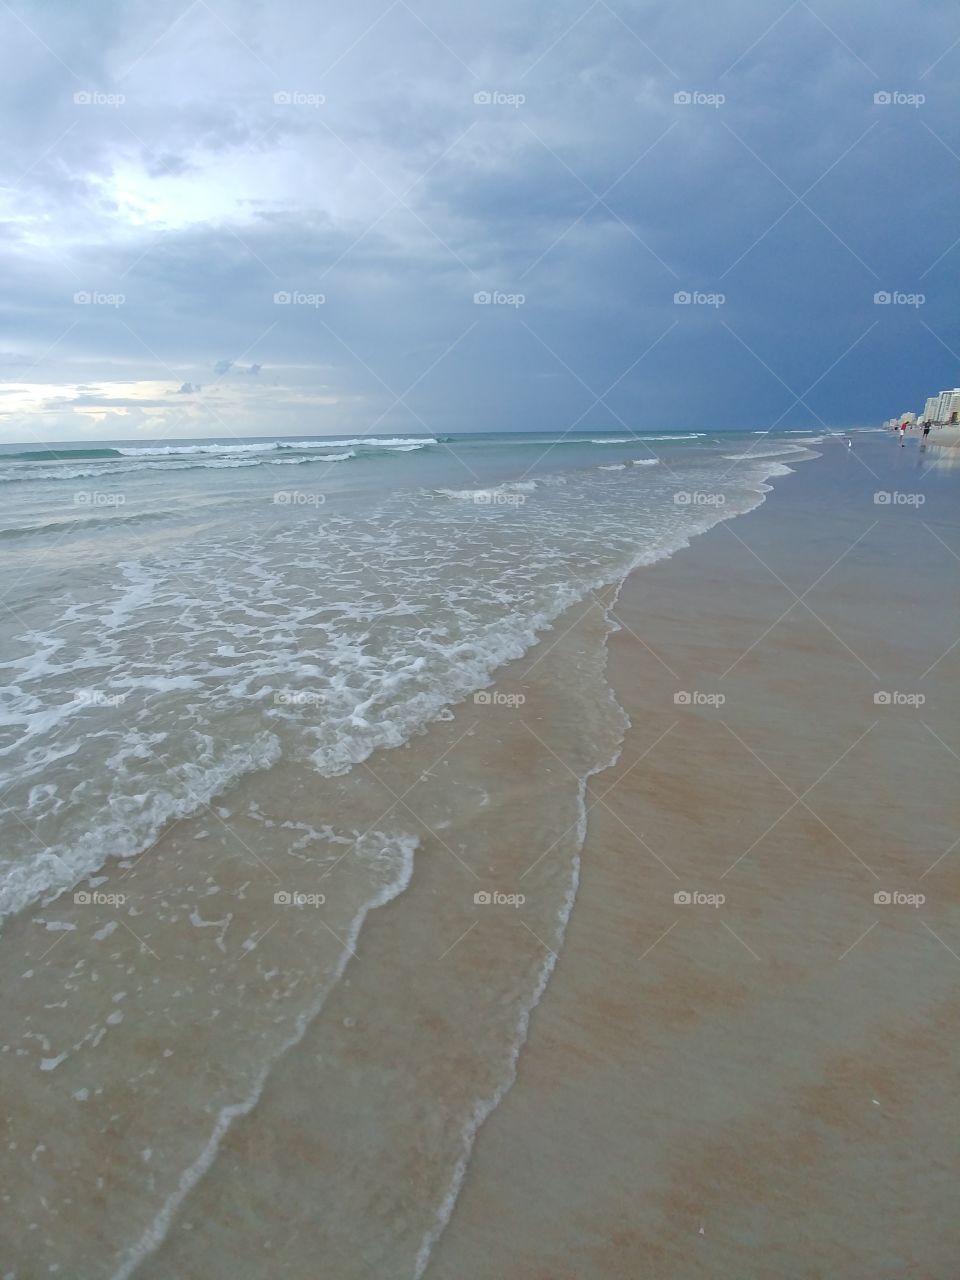 Beach, Sand, Water, Sea, No Person